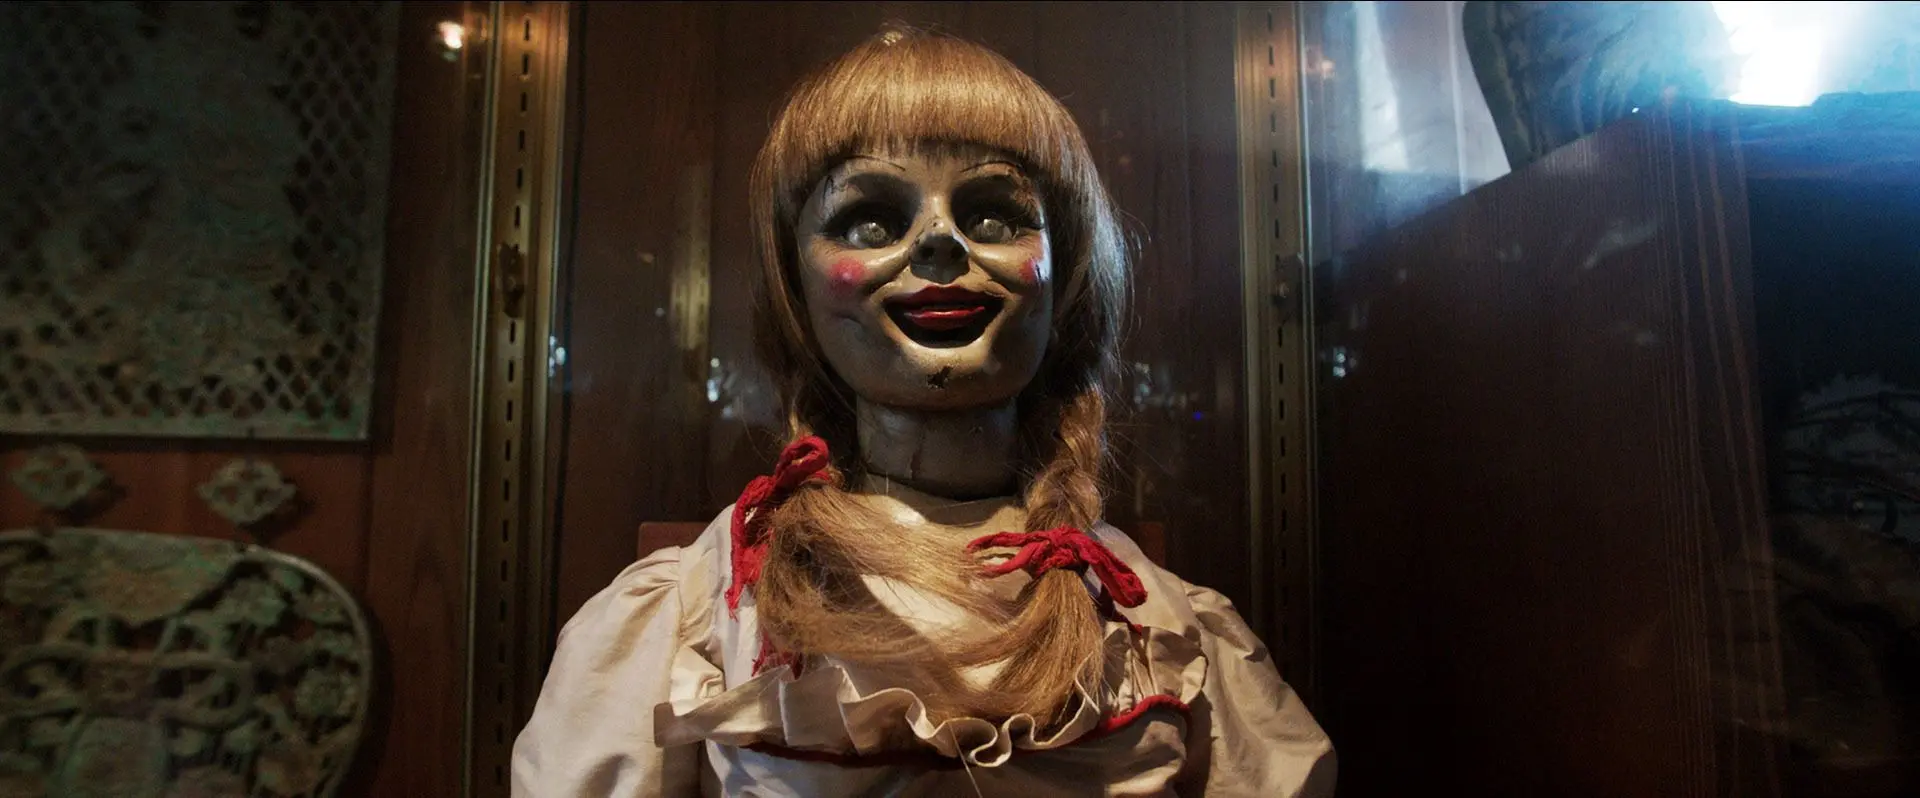 V zajetí démonů 2 na cestě. Strašidelná panenka Annabelle dostane vlastní film.